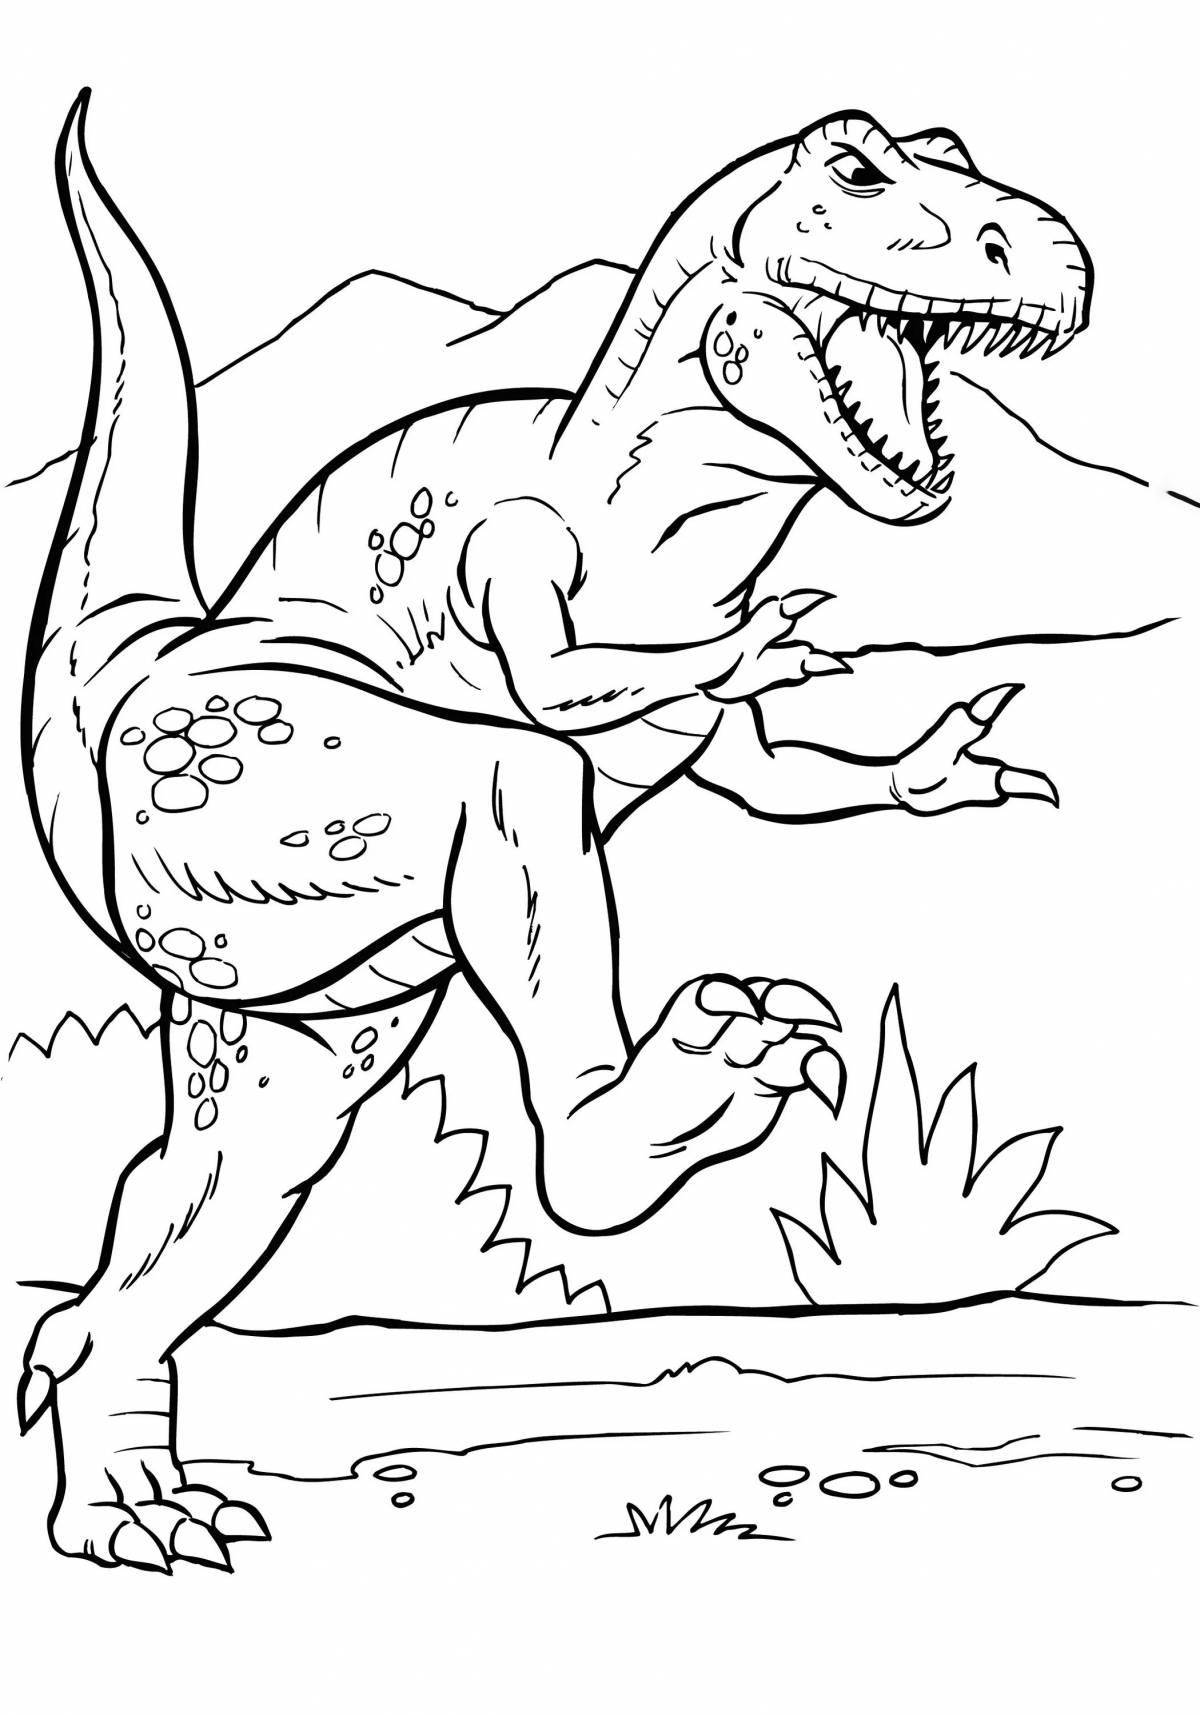 Сказочная страница раскраски динозавров рекс для детей